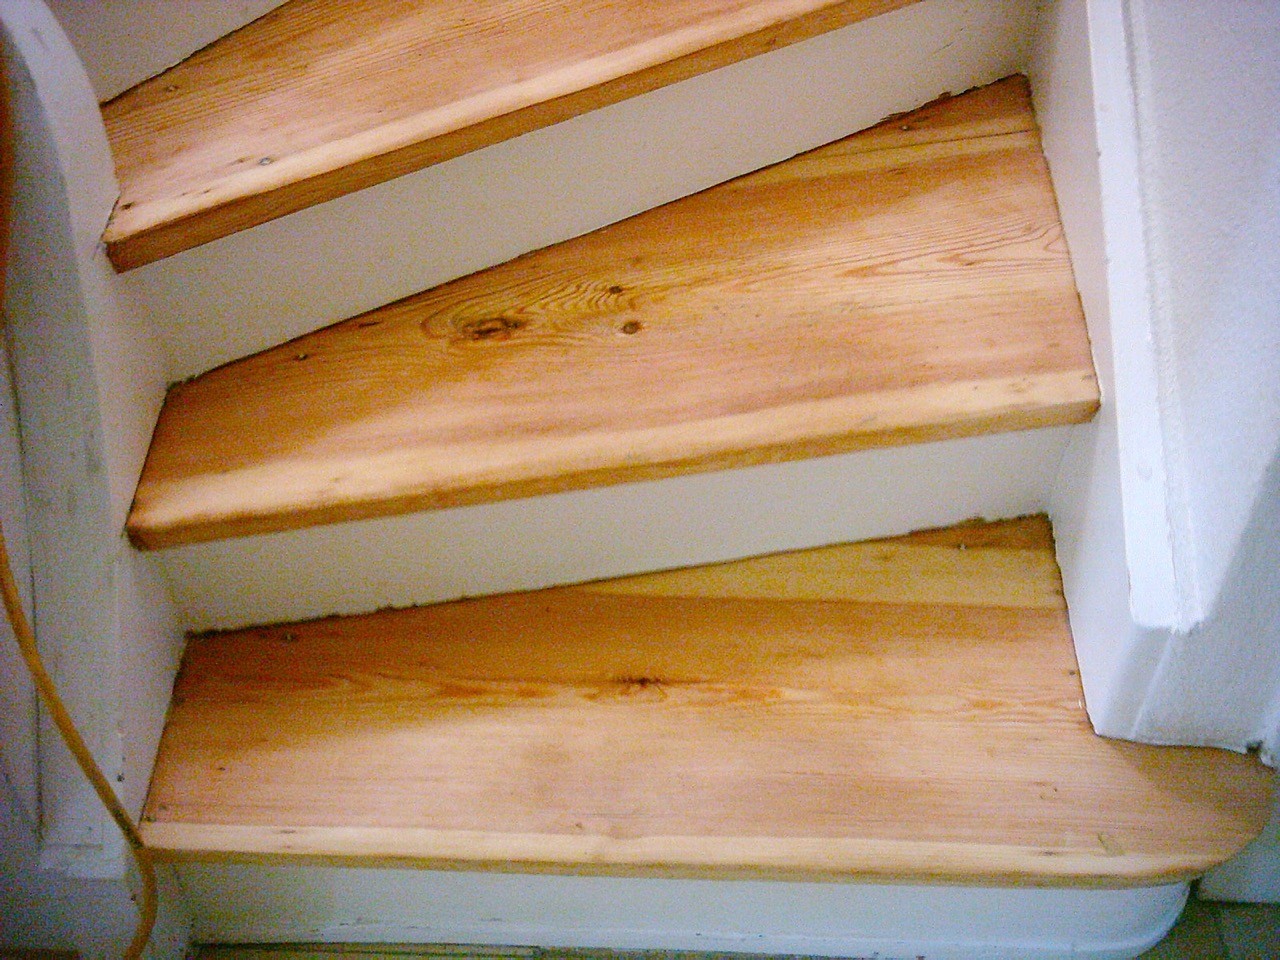 Treppe mit Acryl-Wasserlack versiegelt